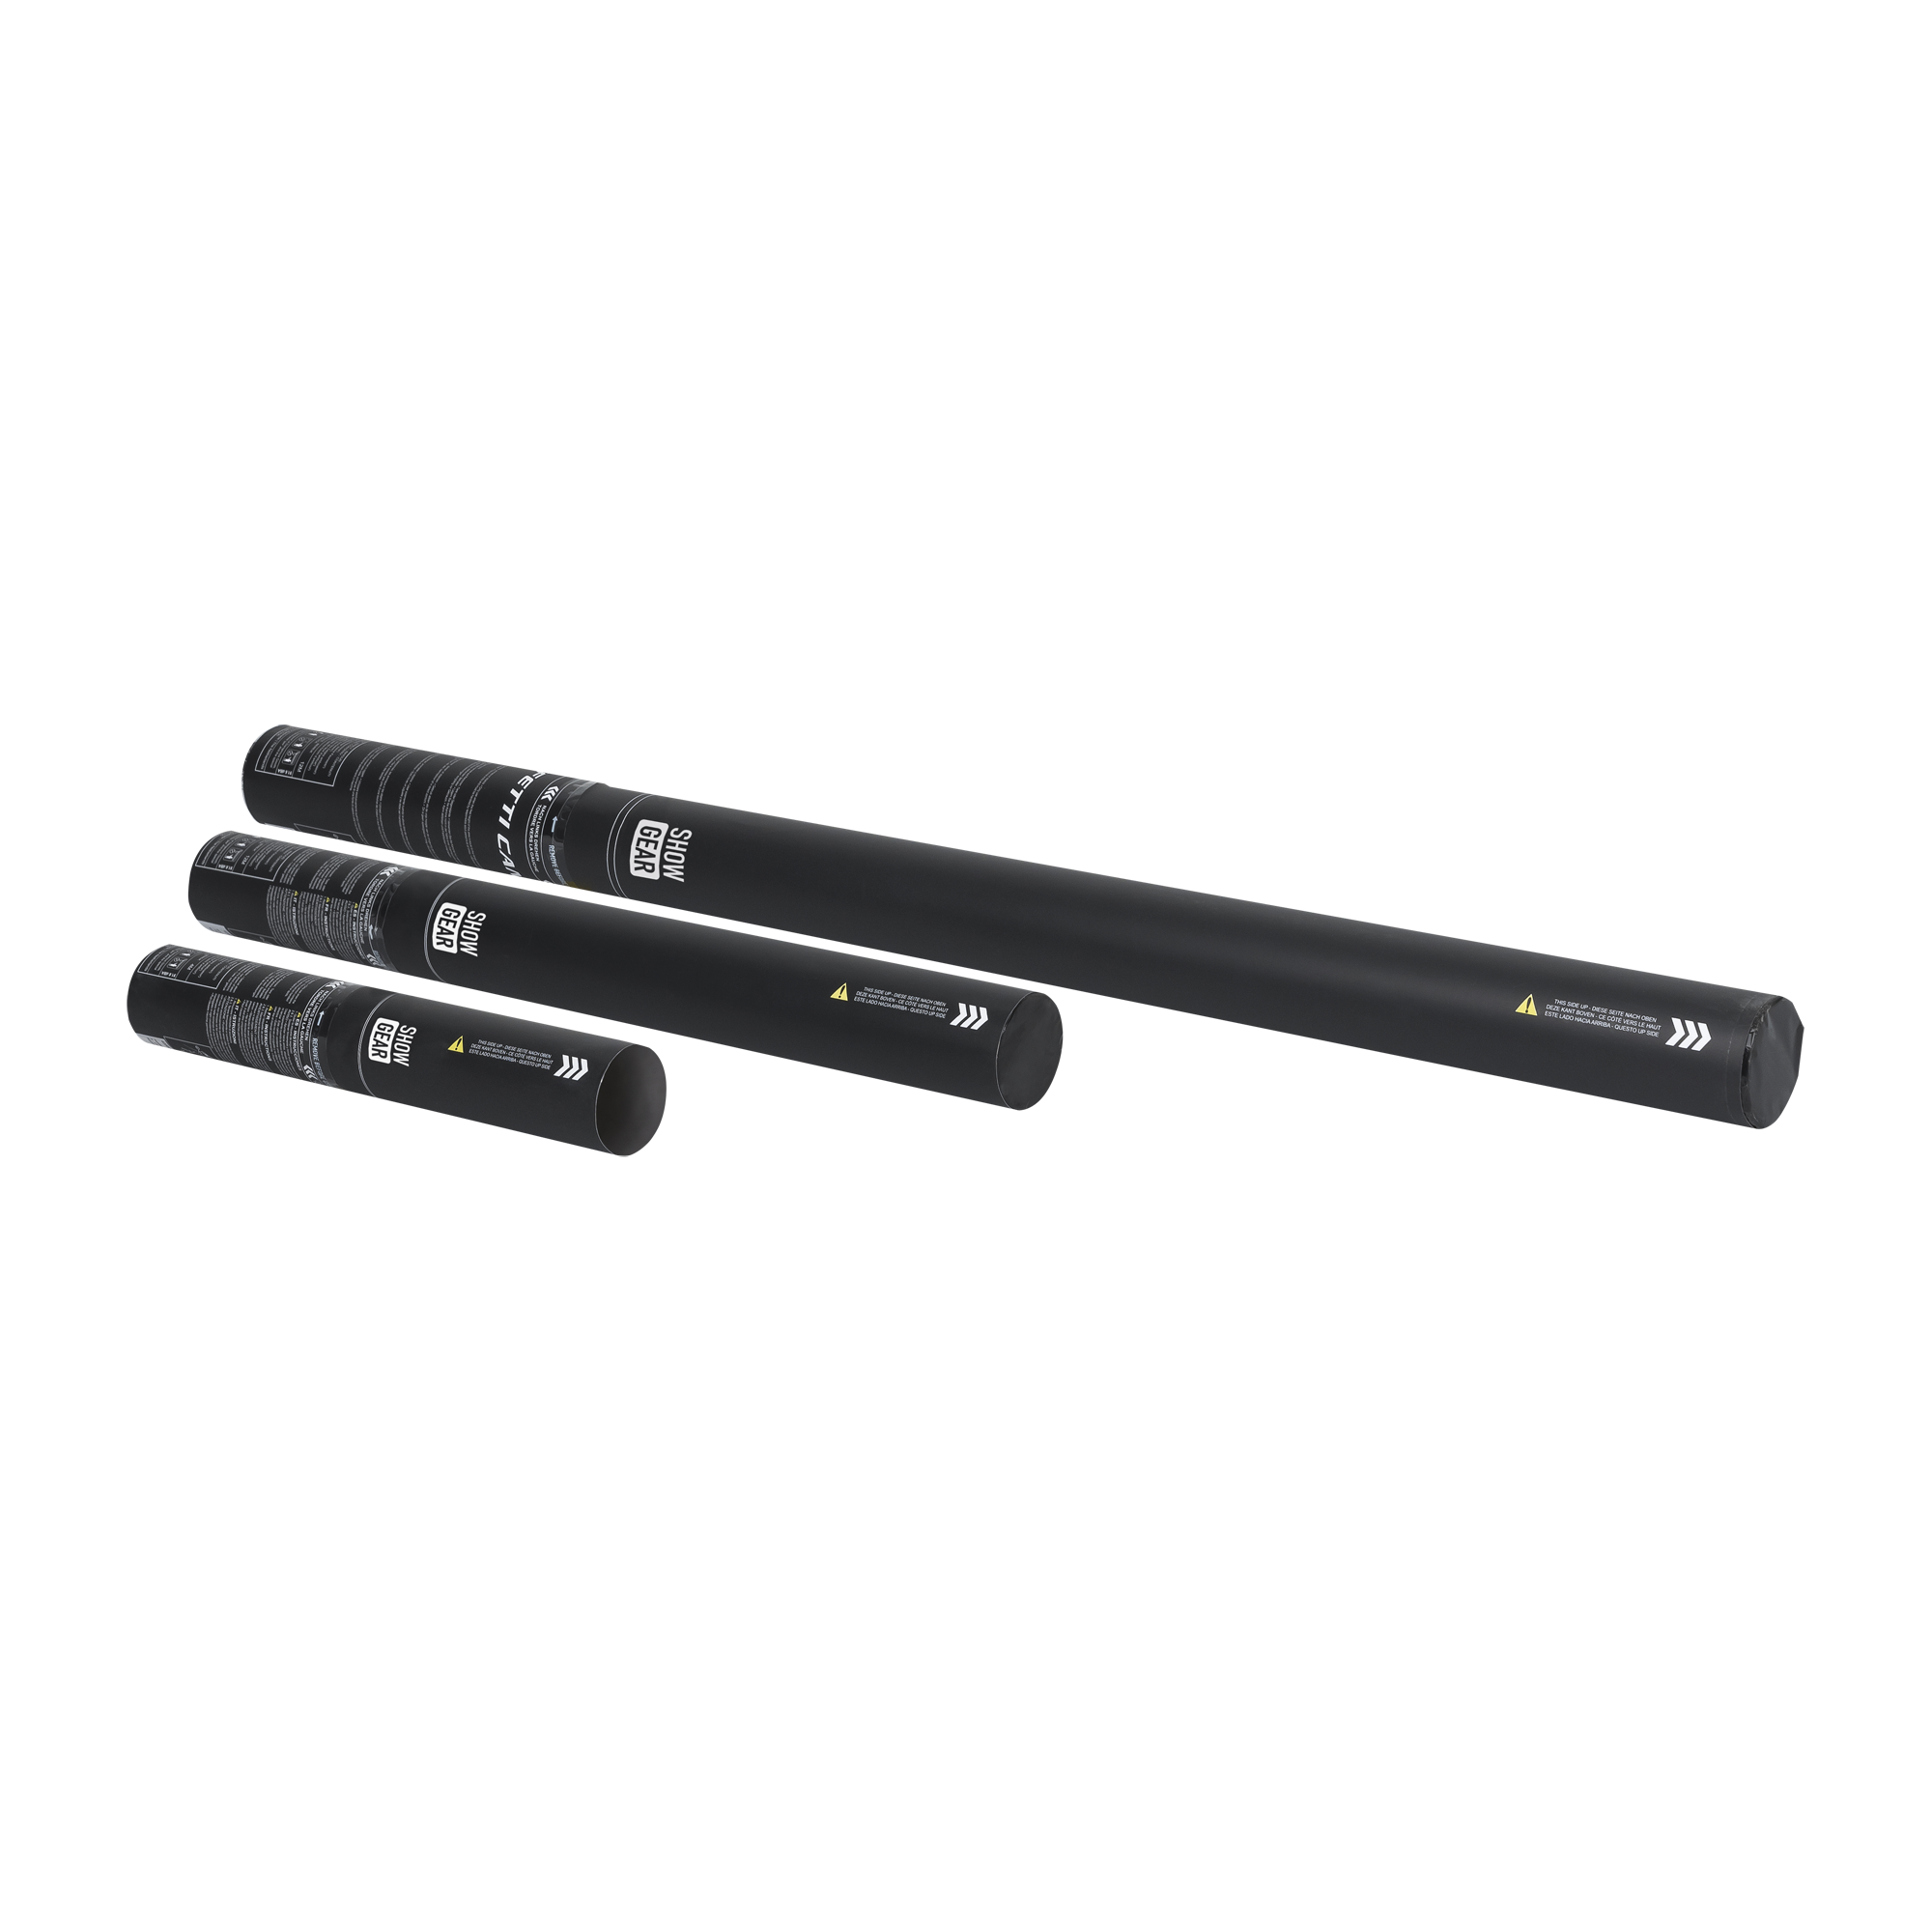 Showgear Handheld Streamer Cannon 50 cm, schwarz, feuerhemmend und biologisch abbaubar